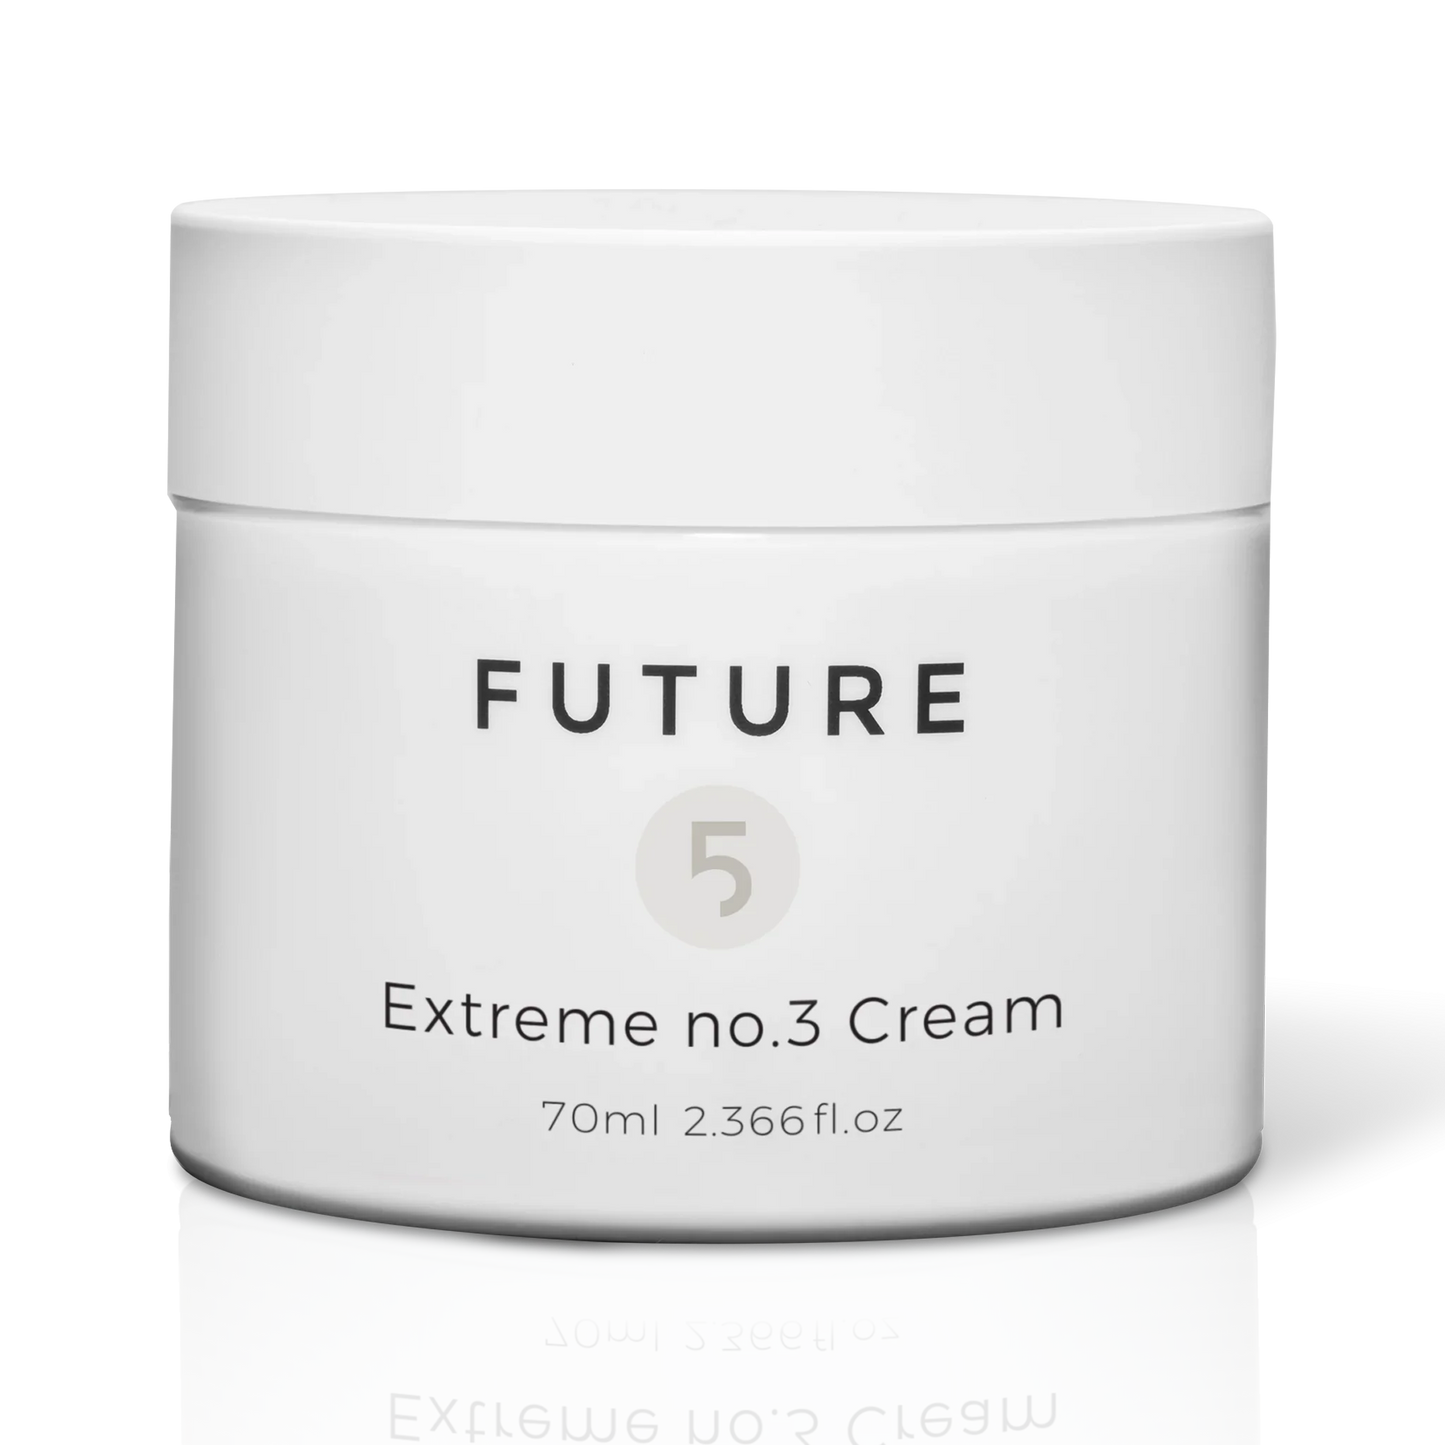 Extreme no. 3 Cream